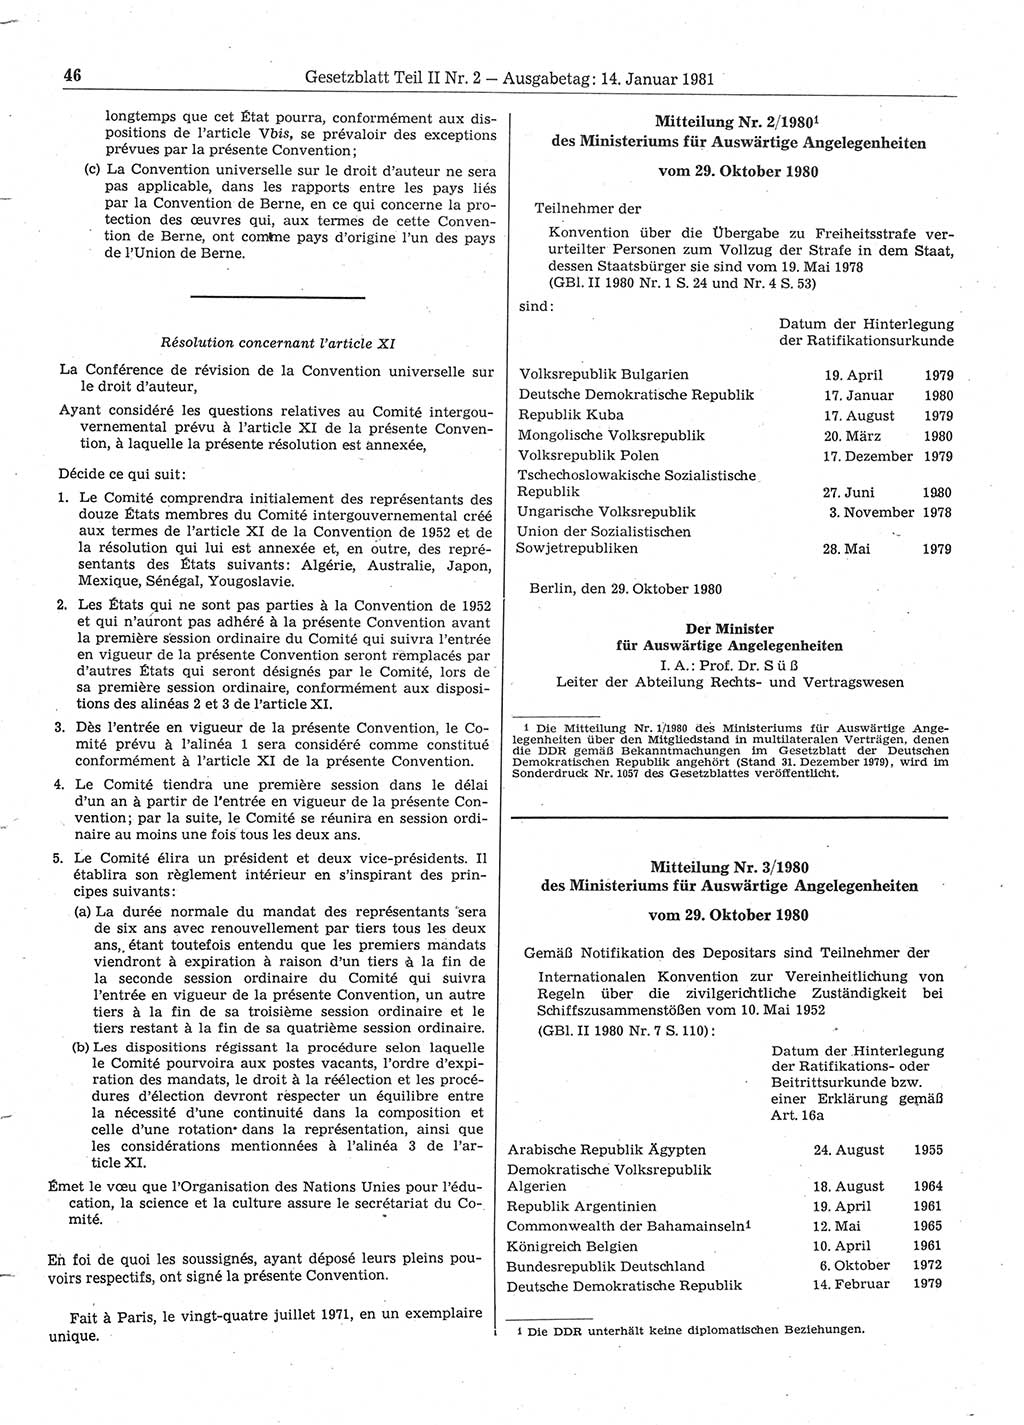 Gesetzblatt (GBl.) der Deutschen Demokratischen Republik (DDR) Teil ⅠⅠ 1981, Seite 46 (GBl. DDR ⅠⅠ 1981, S. 46)